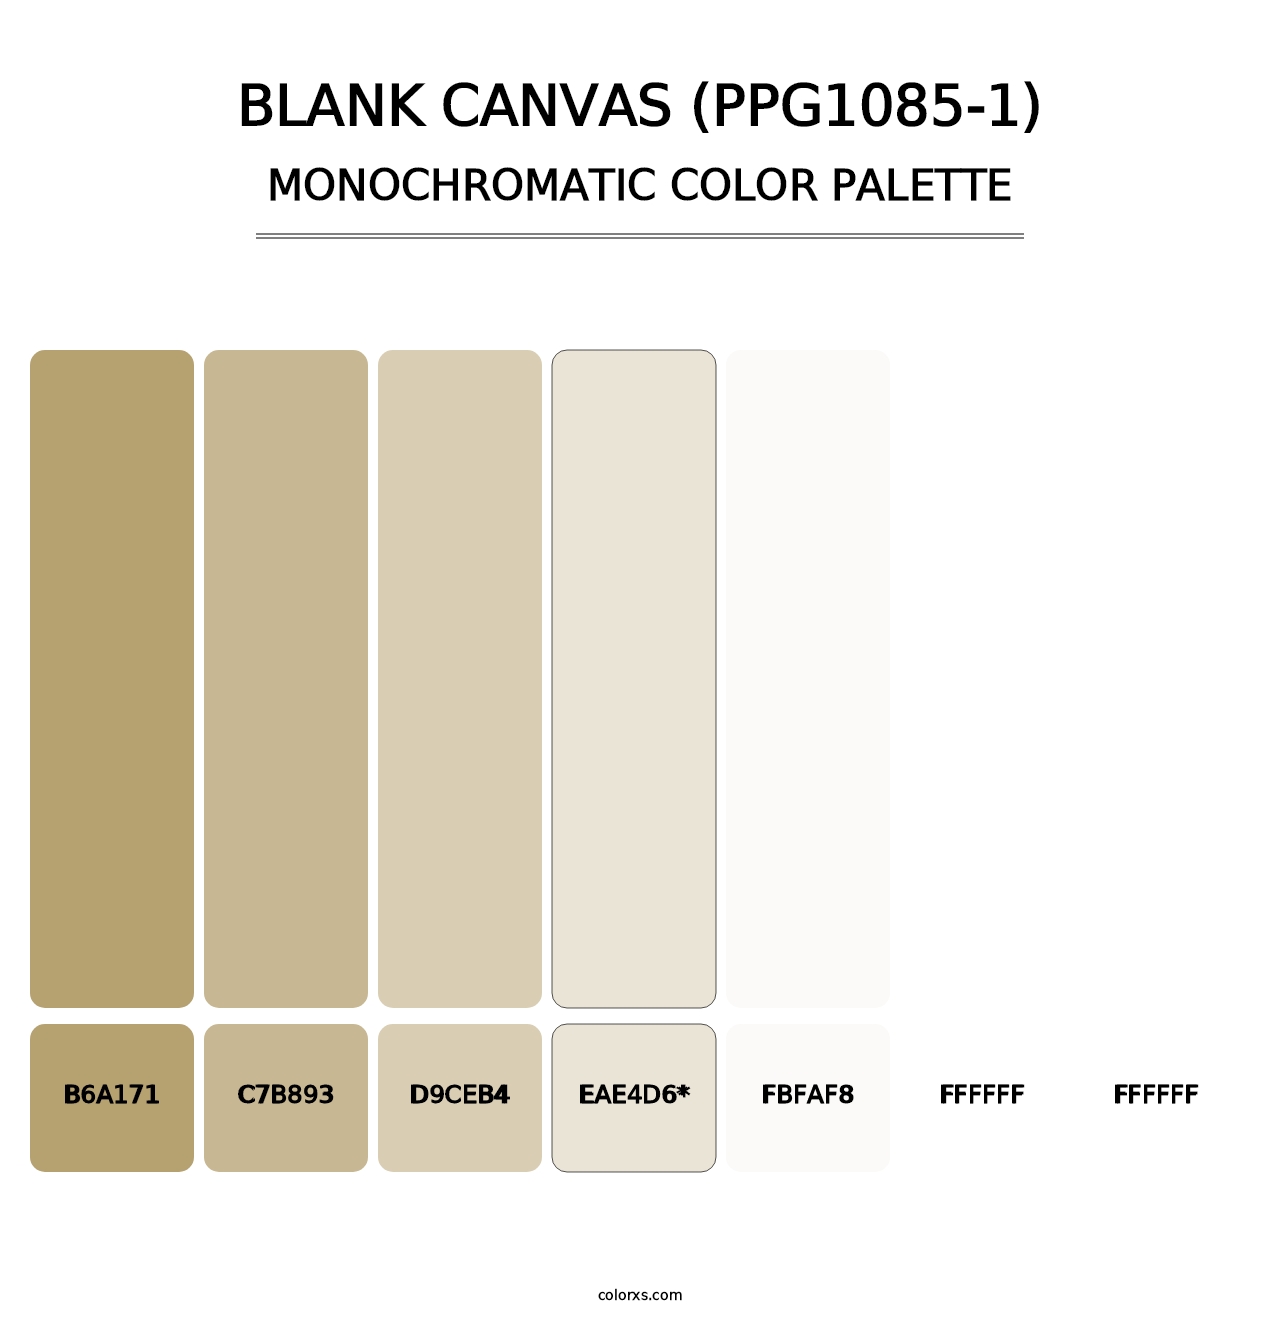 Blank Canvas (PPG1085-1) - Monochromatic Color Palette